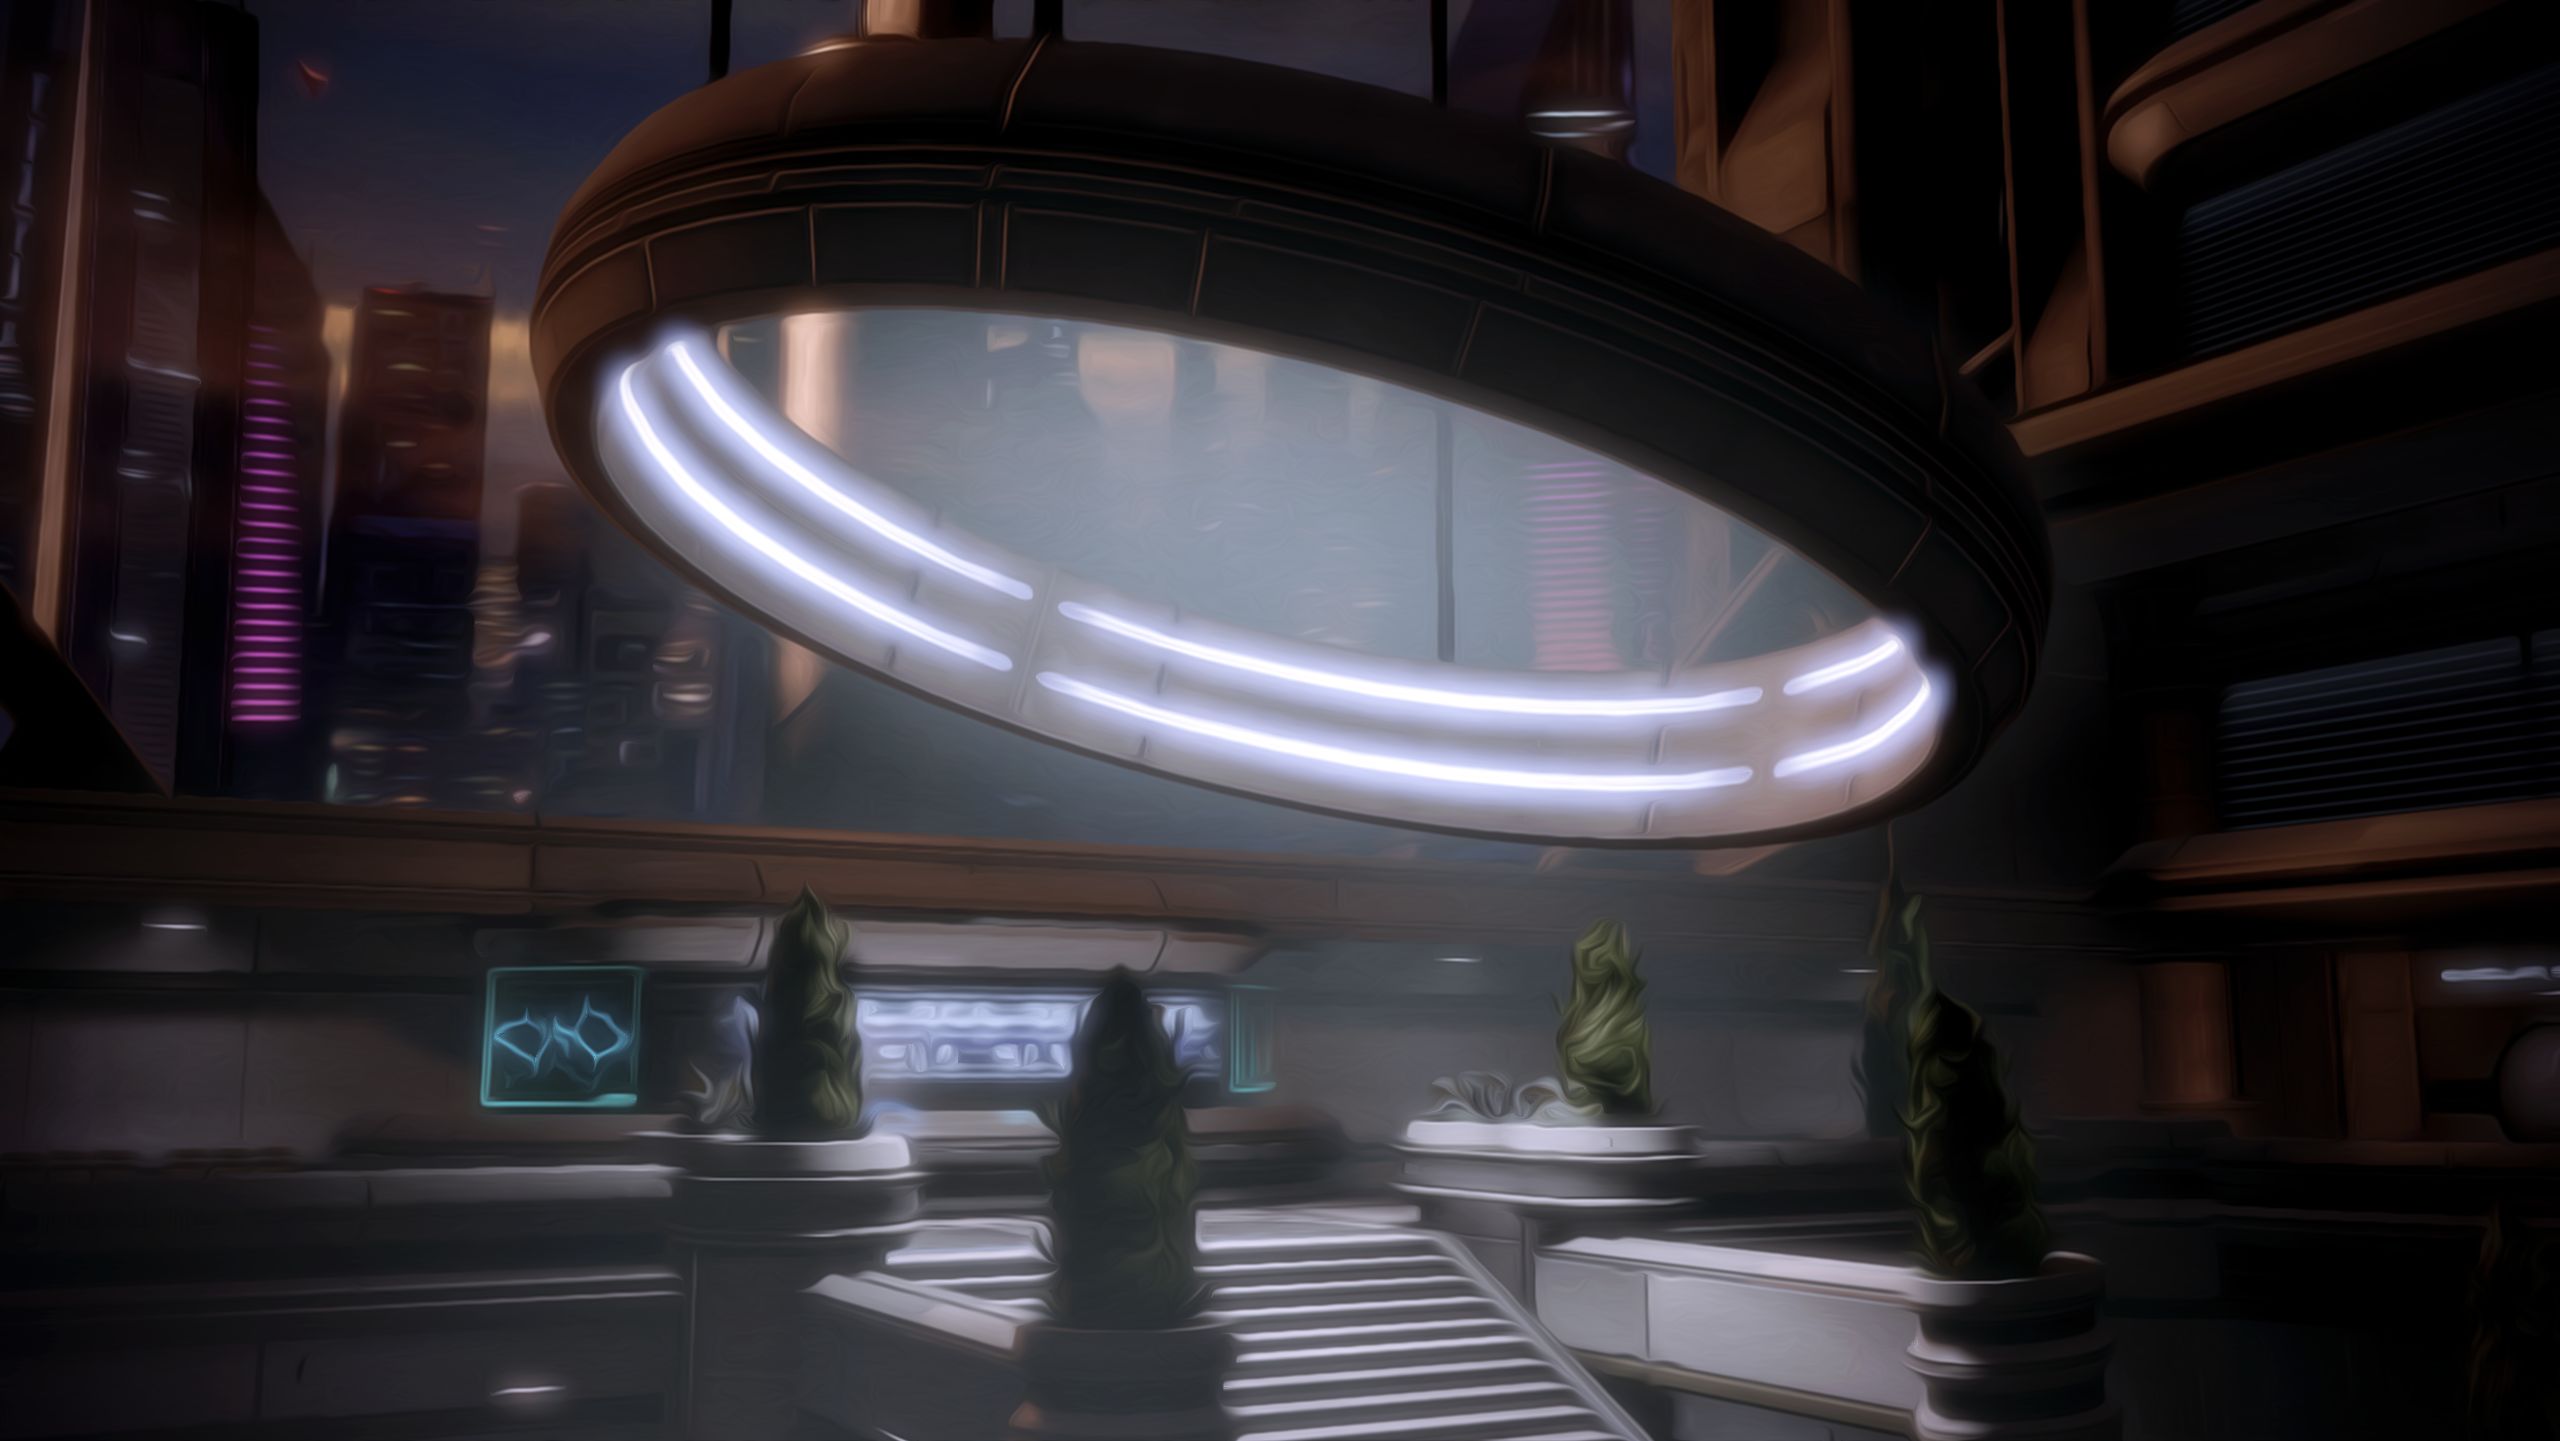 Baixar papel de parede para celular de Mass Effect 2, Mass Effect, Videogame gratuito.